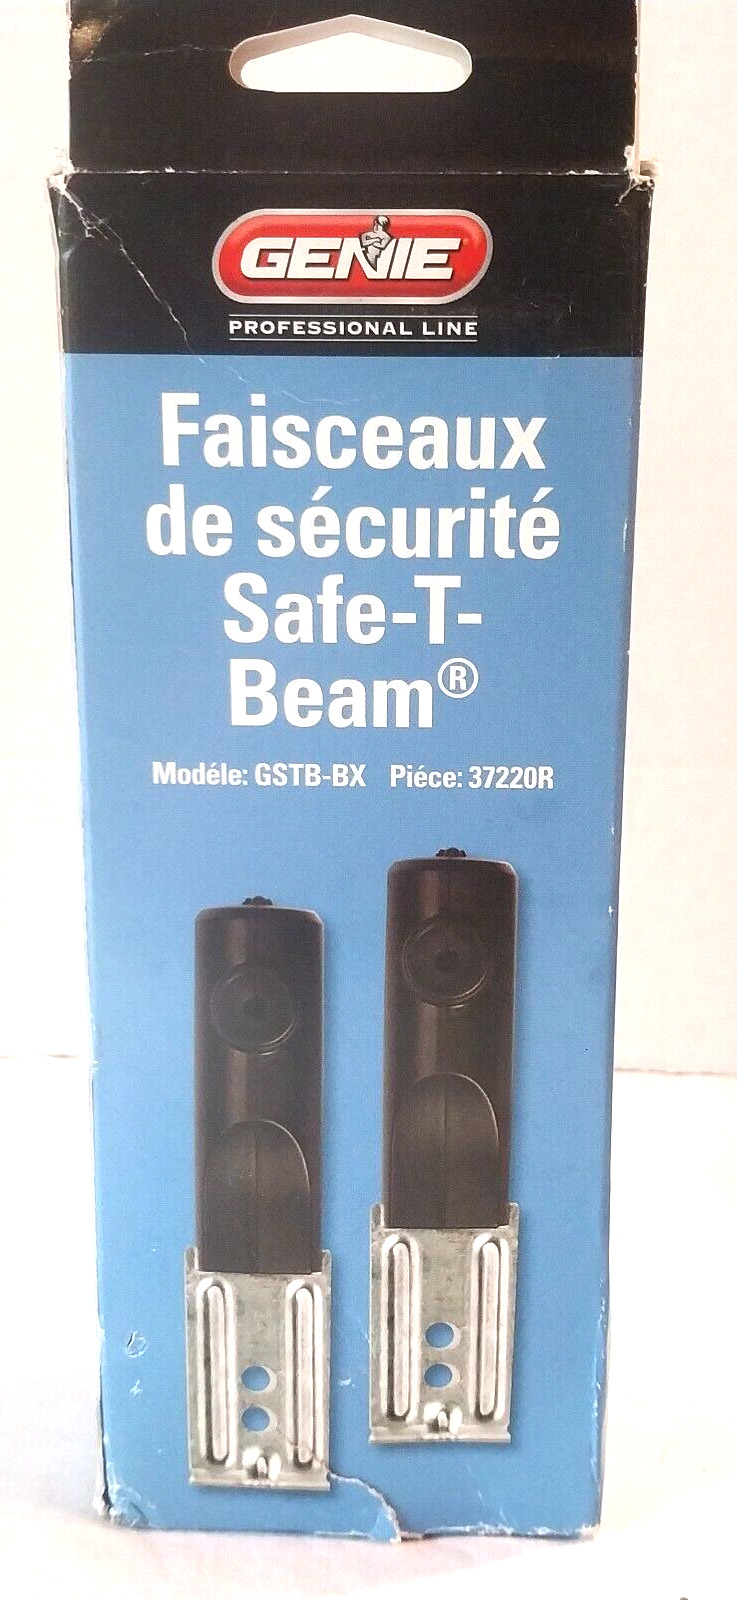 NEW Genie Safe-T-Beam Garage Door Safety Sensors Model GSTB-BX Part 37220R